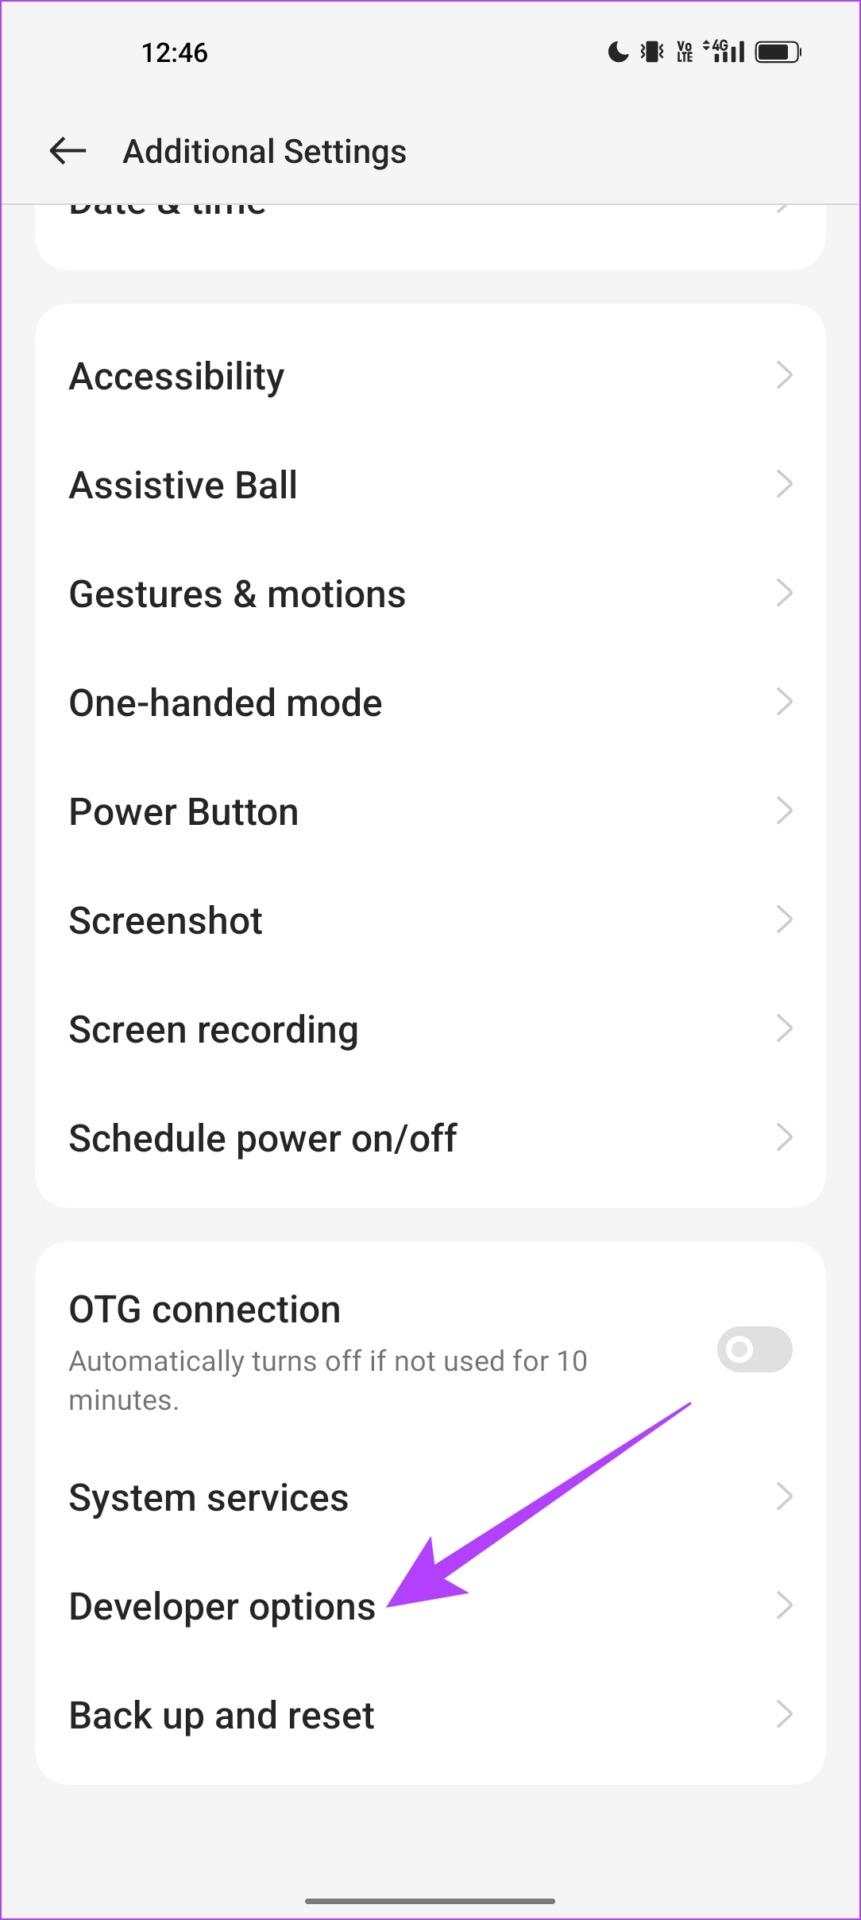 Come forzare una frequenza di aggiornamento elevata su tutte le app Android senza root